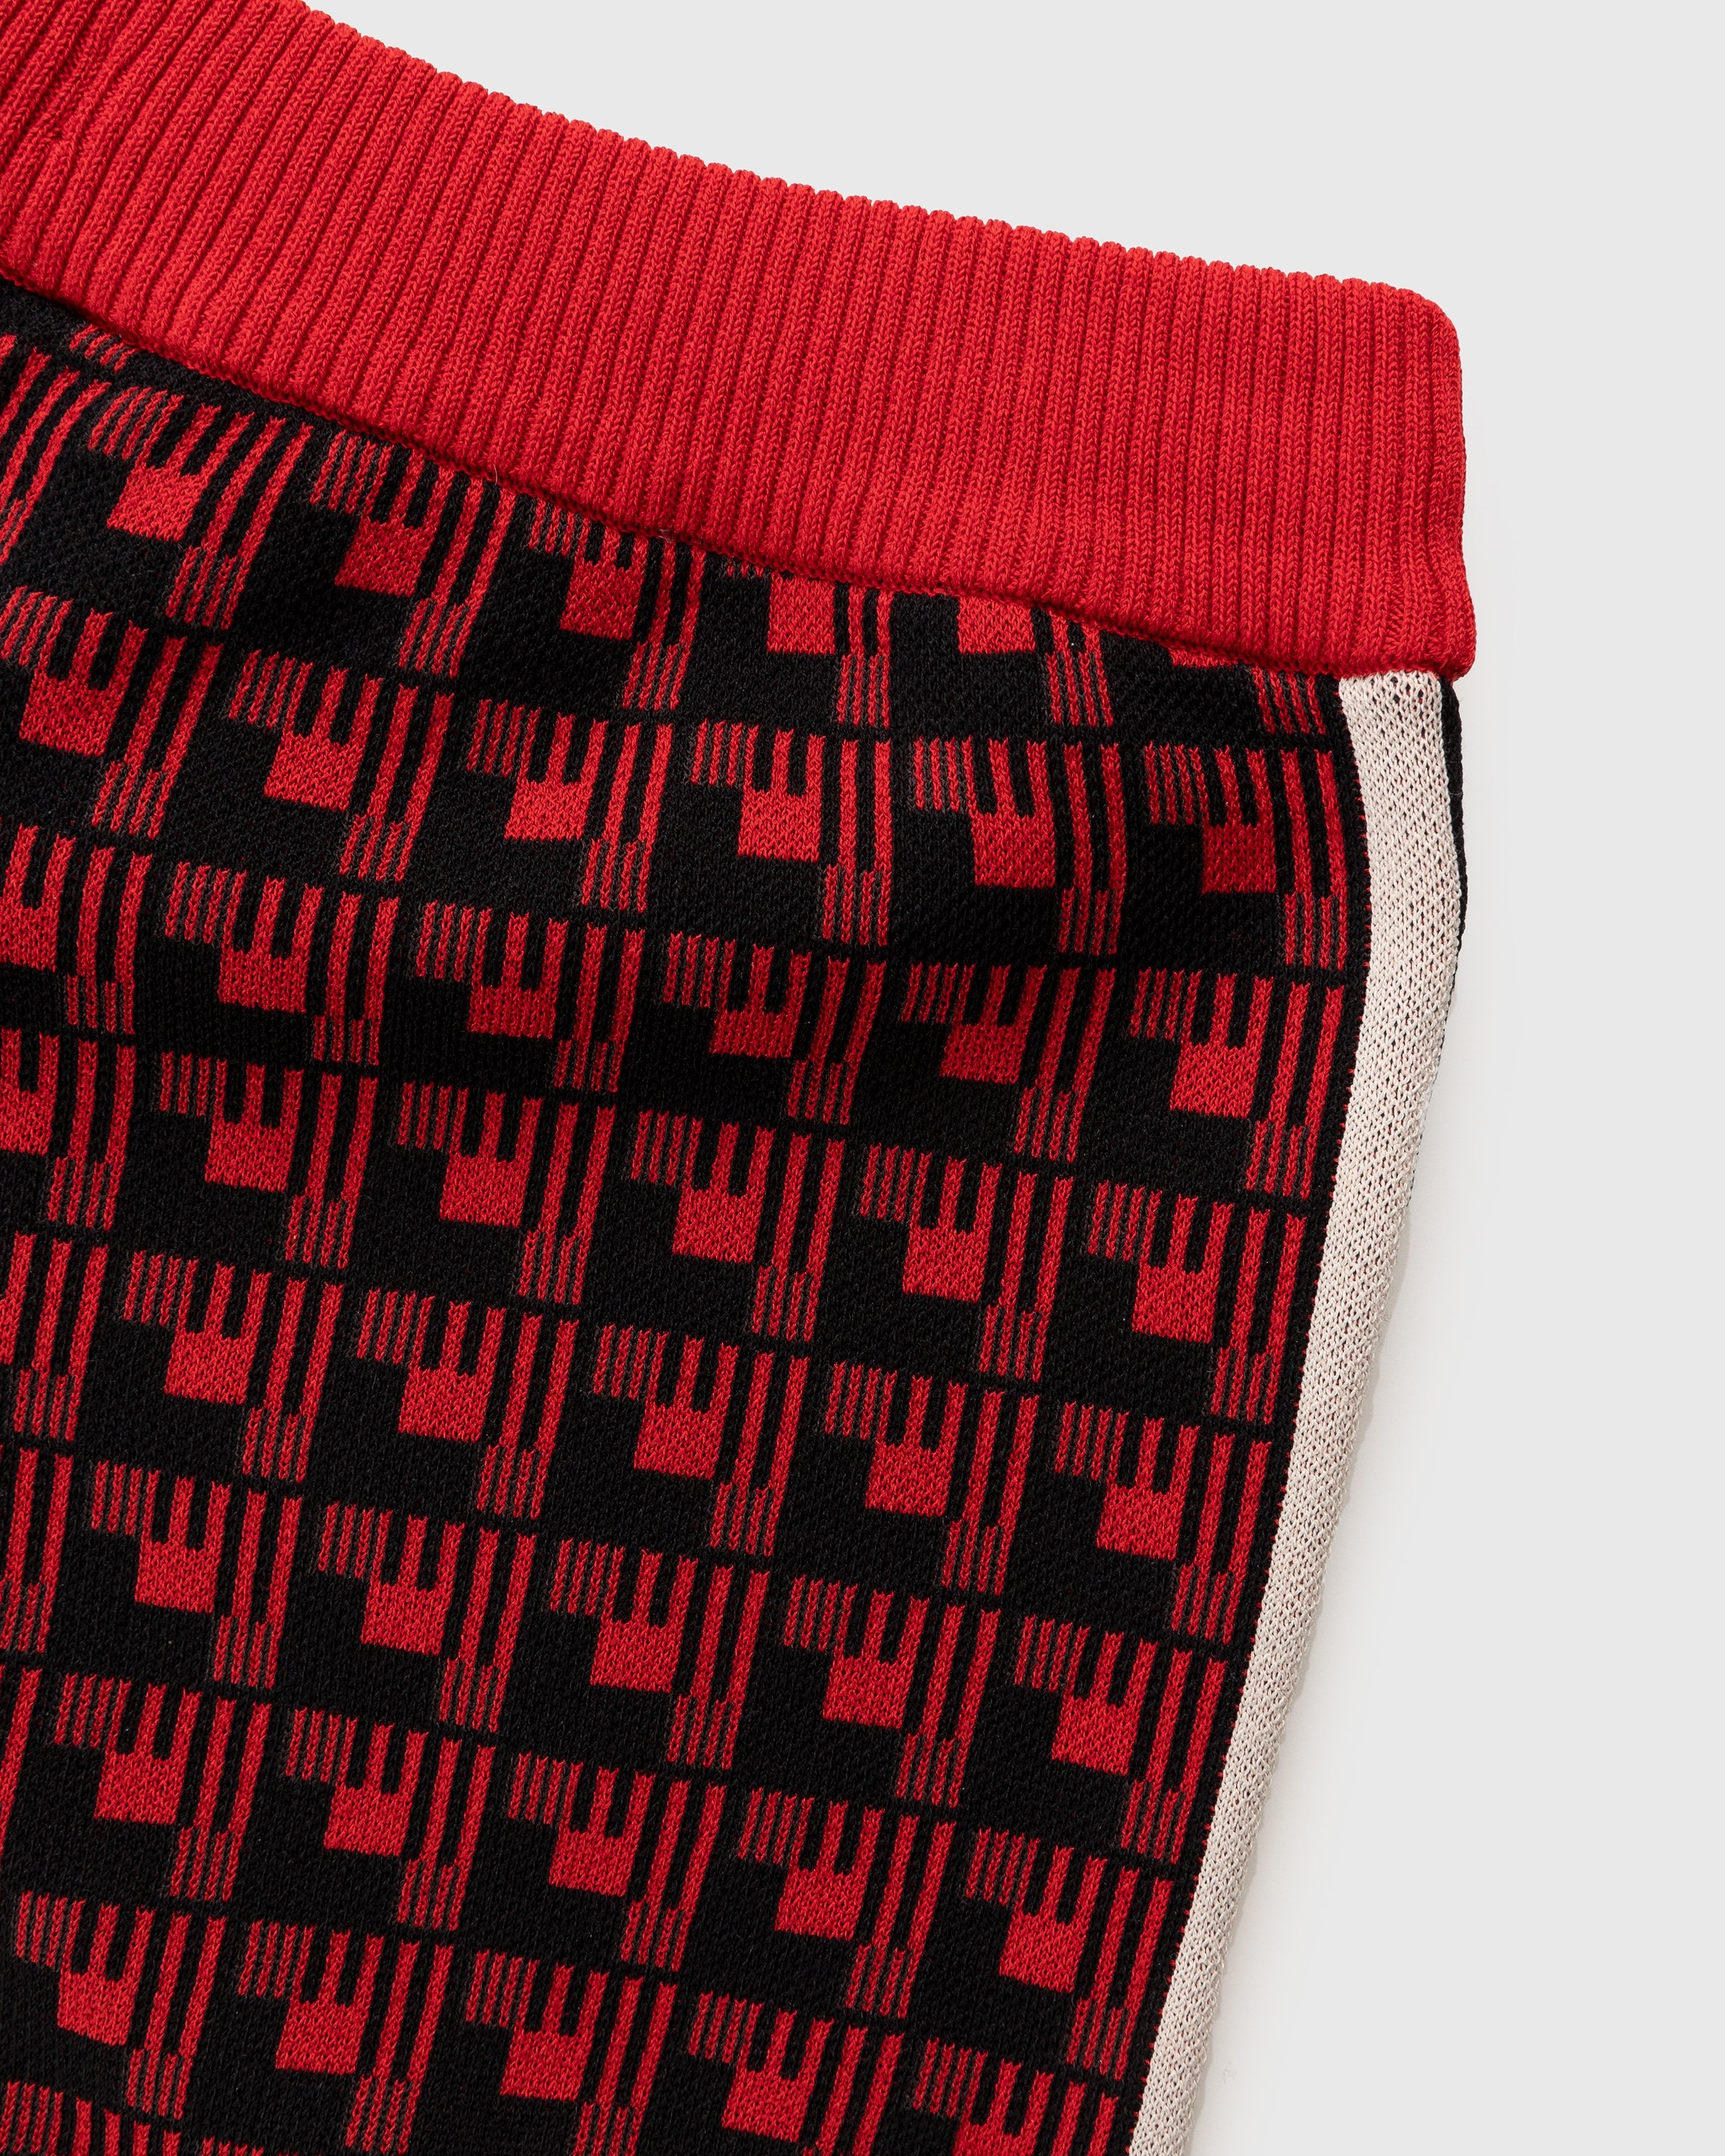 Adidas x Wales Bonner – WB Knit Shorts Scarlet/Black - Shorts - Red - Image 6